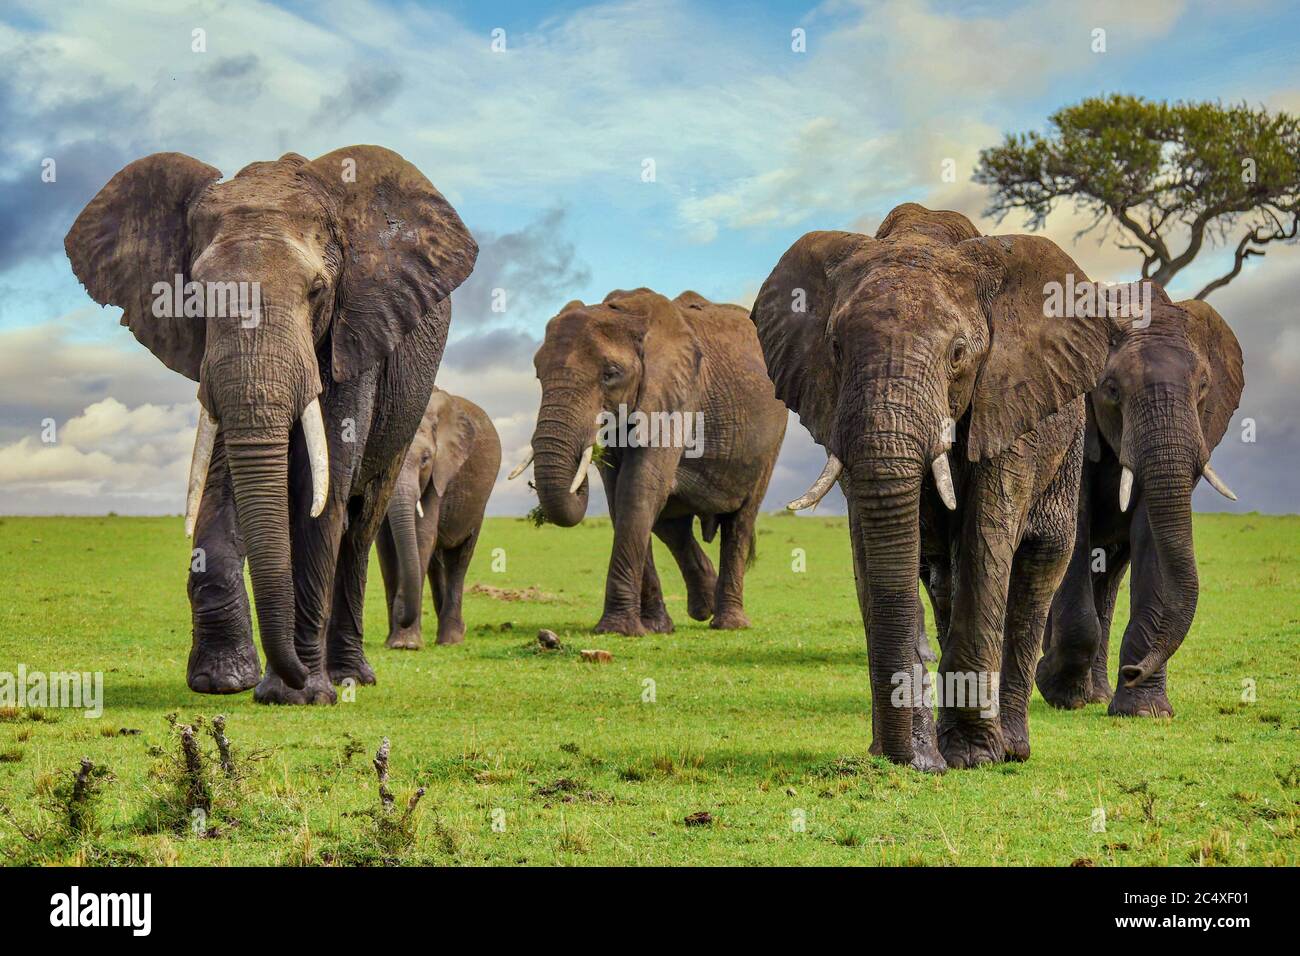 Un troupeau de grands éléphants d'Afrique boueux (Loxodonta africana) avec des défenses, marchant sur une plaine herbeuse dans le Masai Mara au Kenya. Banque D'Images